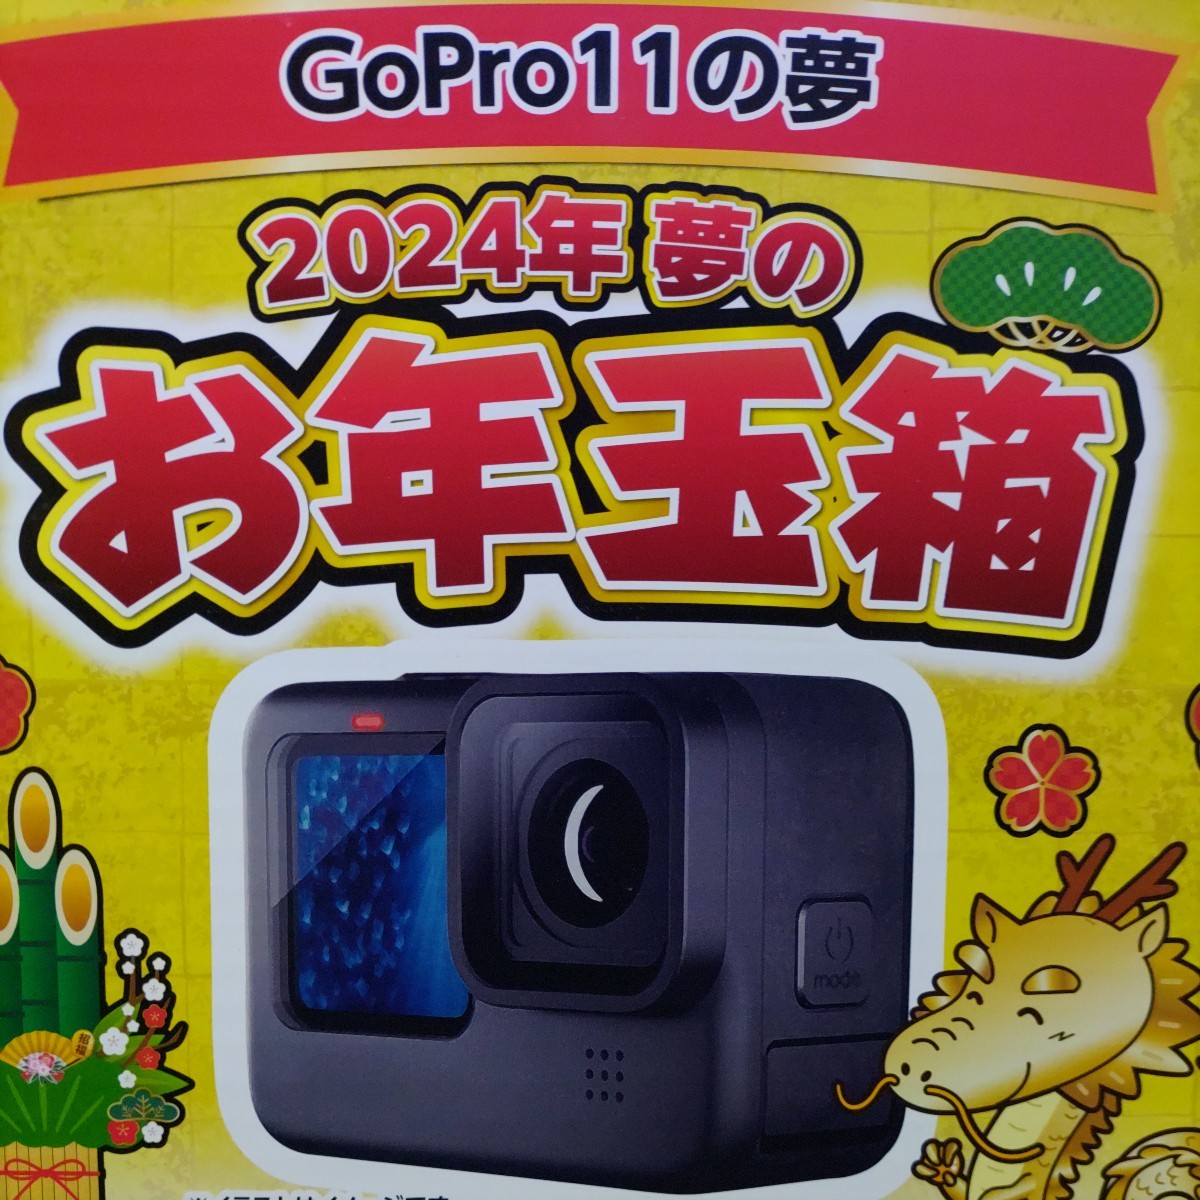 ヨドバシカメラ GoPro11の夢 2024 夢のお年玉箱 福袋